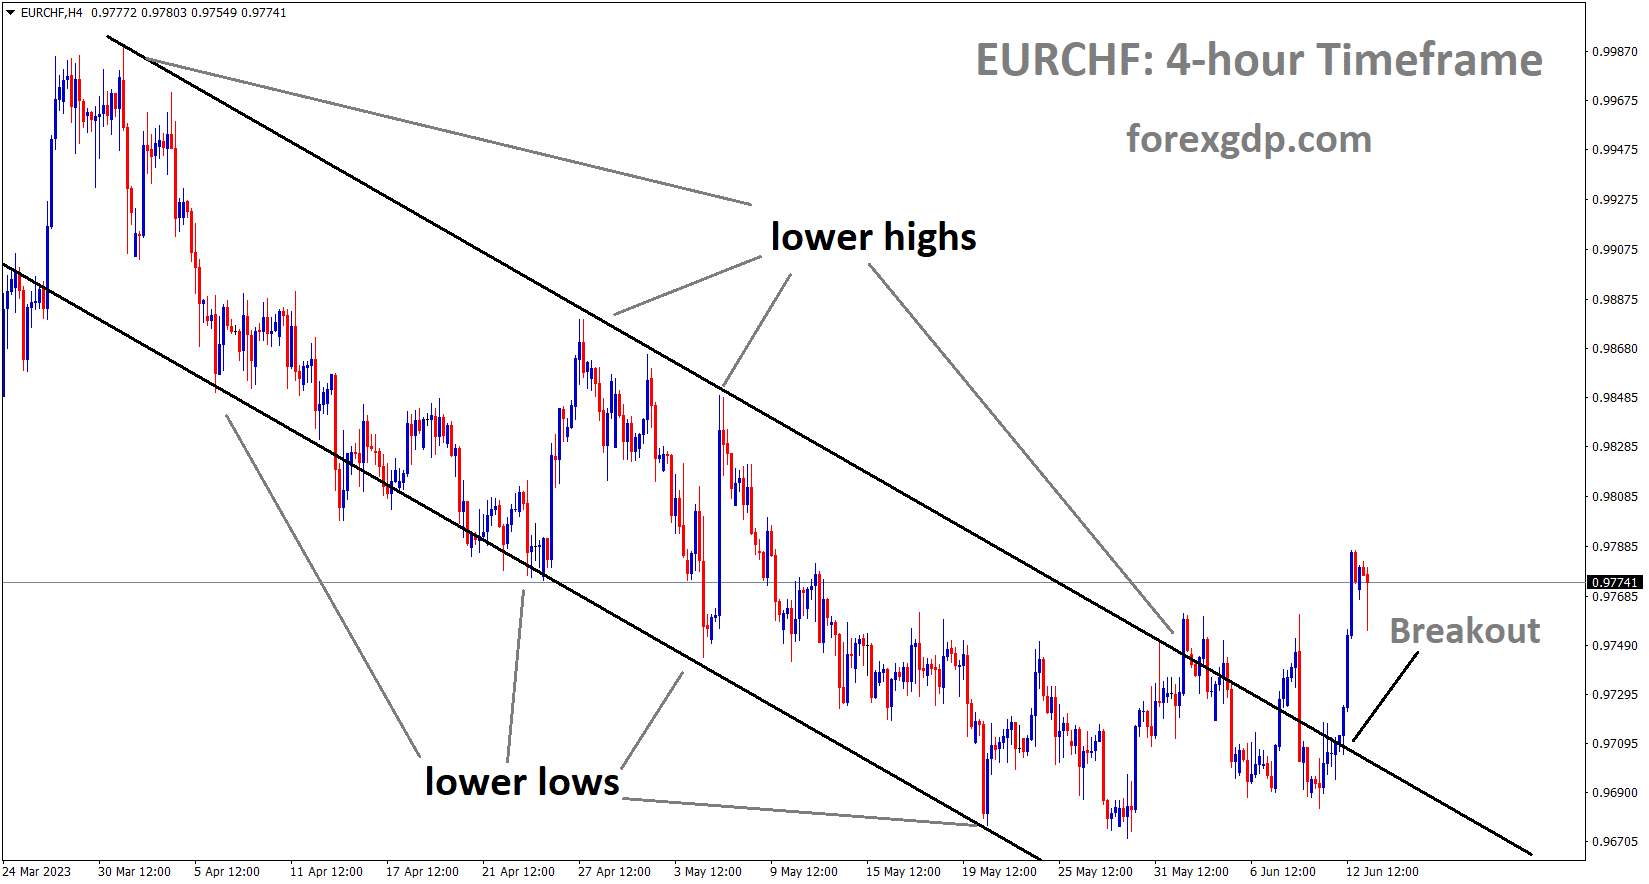 EURCHF has broken the Descending channel in upside